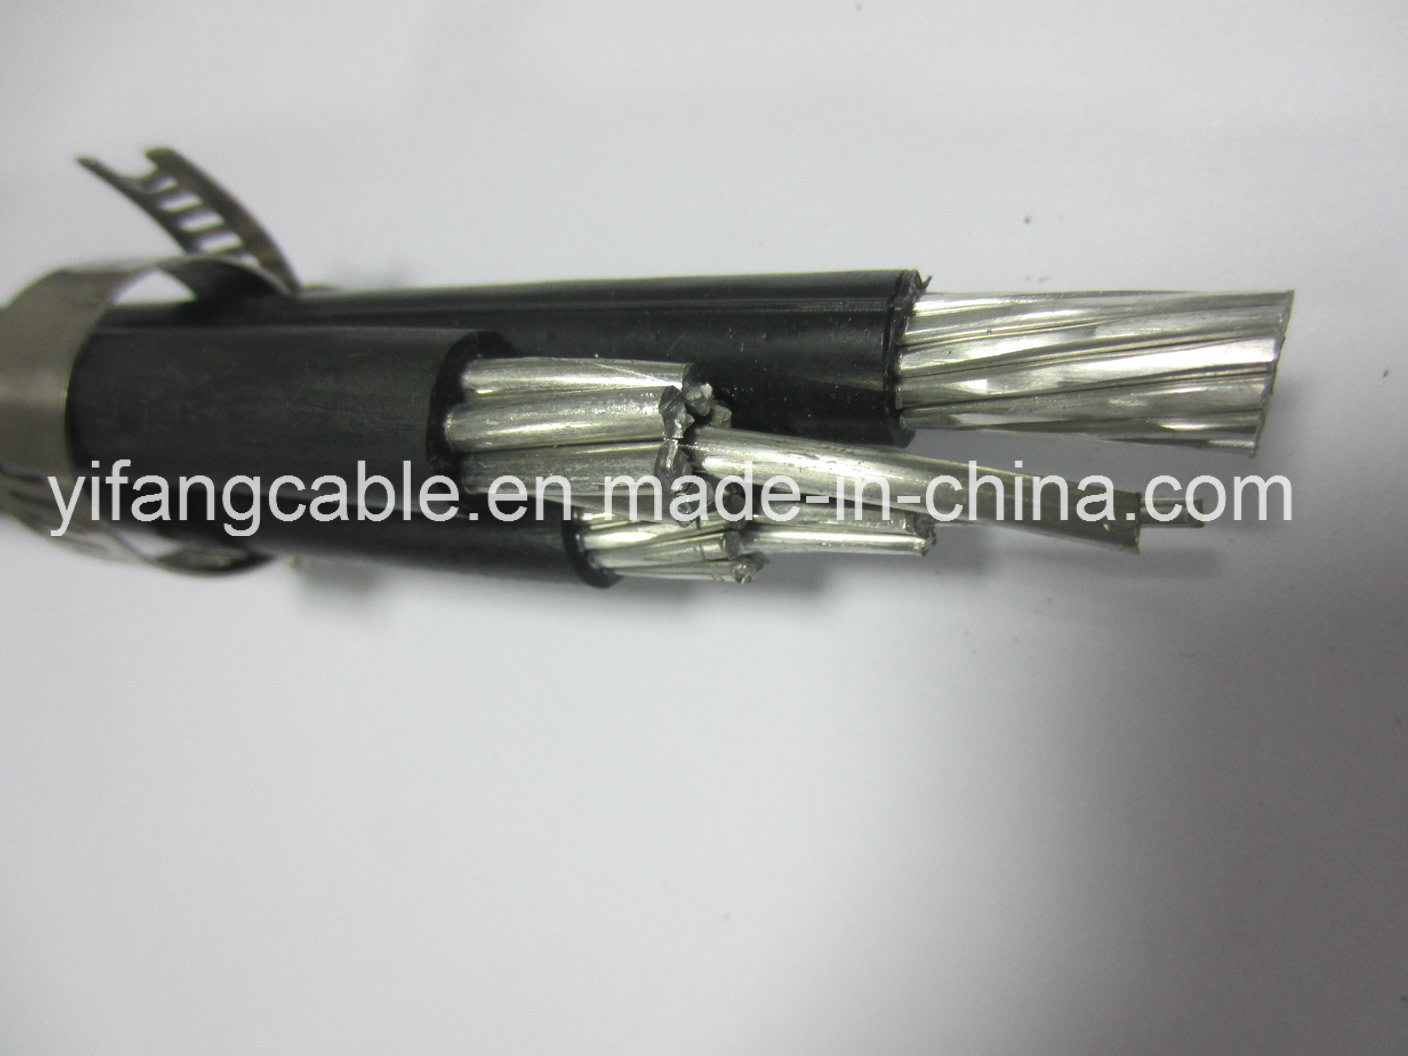 
                Quadruplex (3+1) службы провод алюминиевый проводник 11КВ Антенна верхней пучками кабеля цена 185 35 95мм2
            